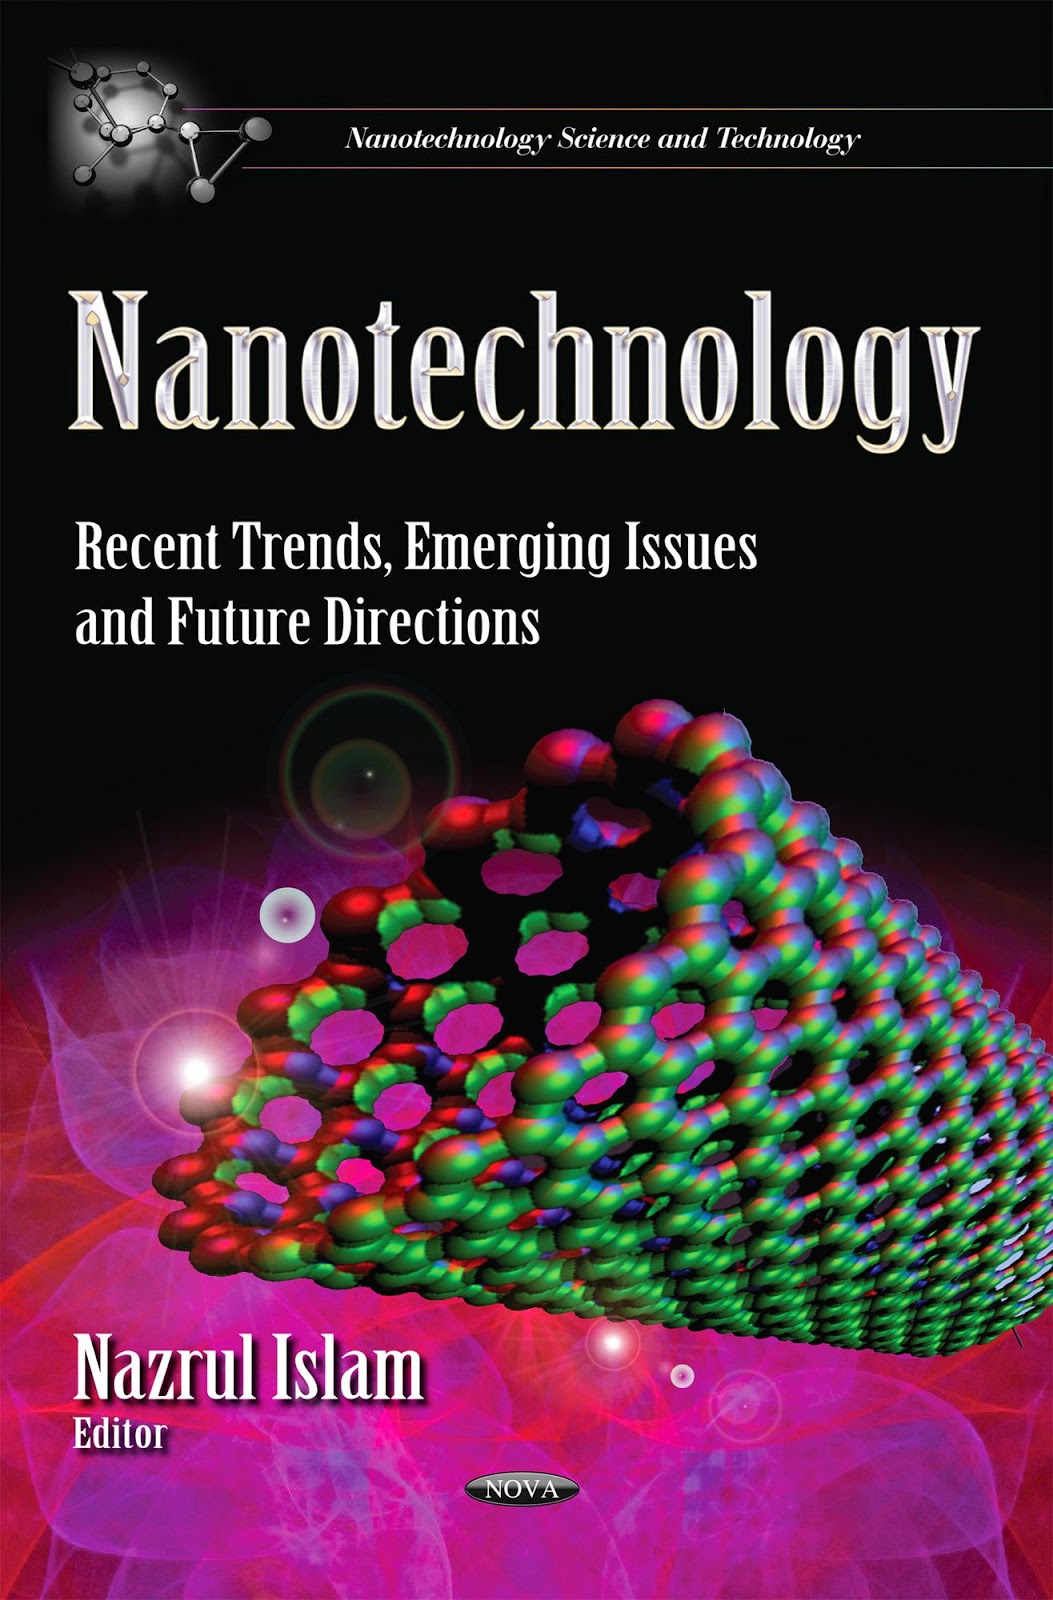 http://kingcheapebook.blogspot.com/2014/08/nanotechnology-recent-trends-emerging.html